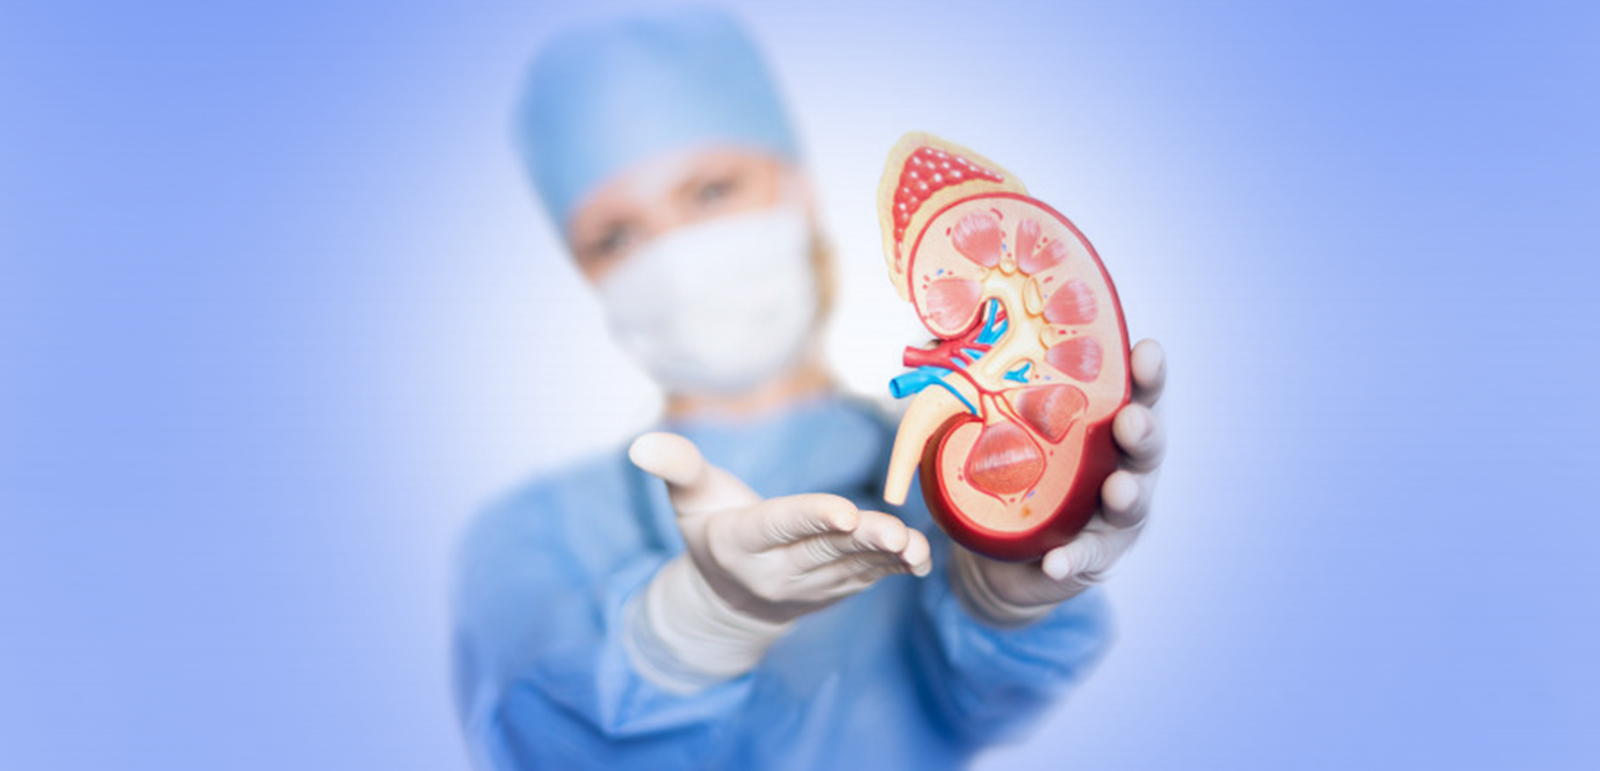 kidney transplant surgeon simulator